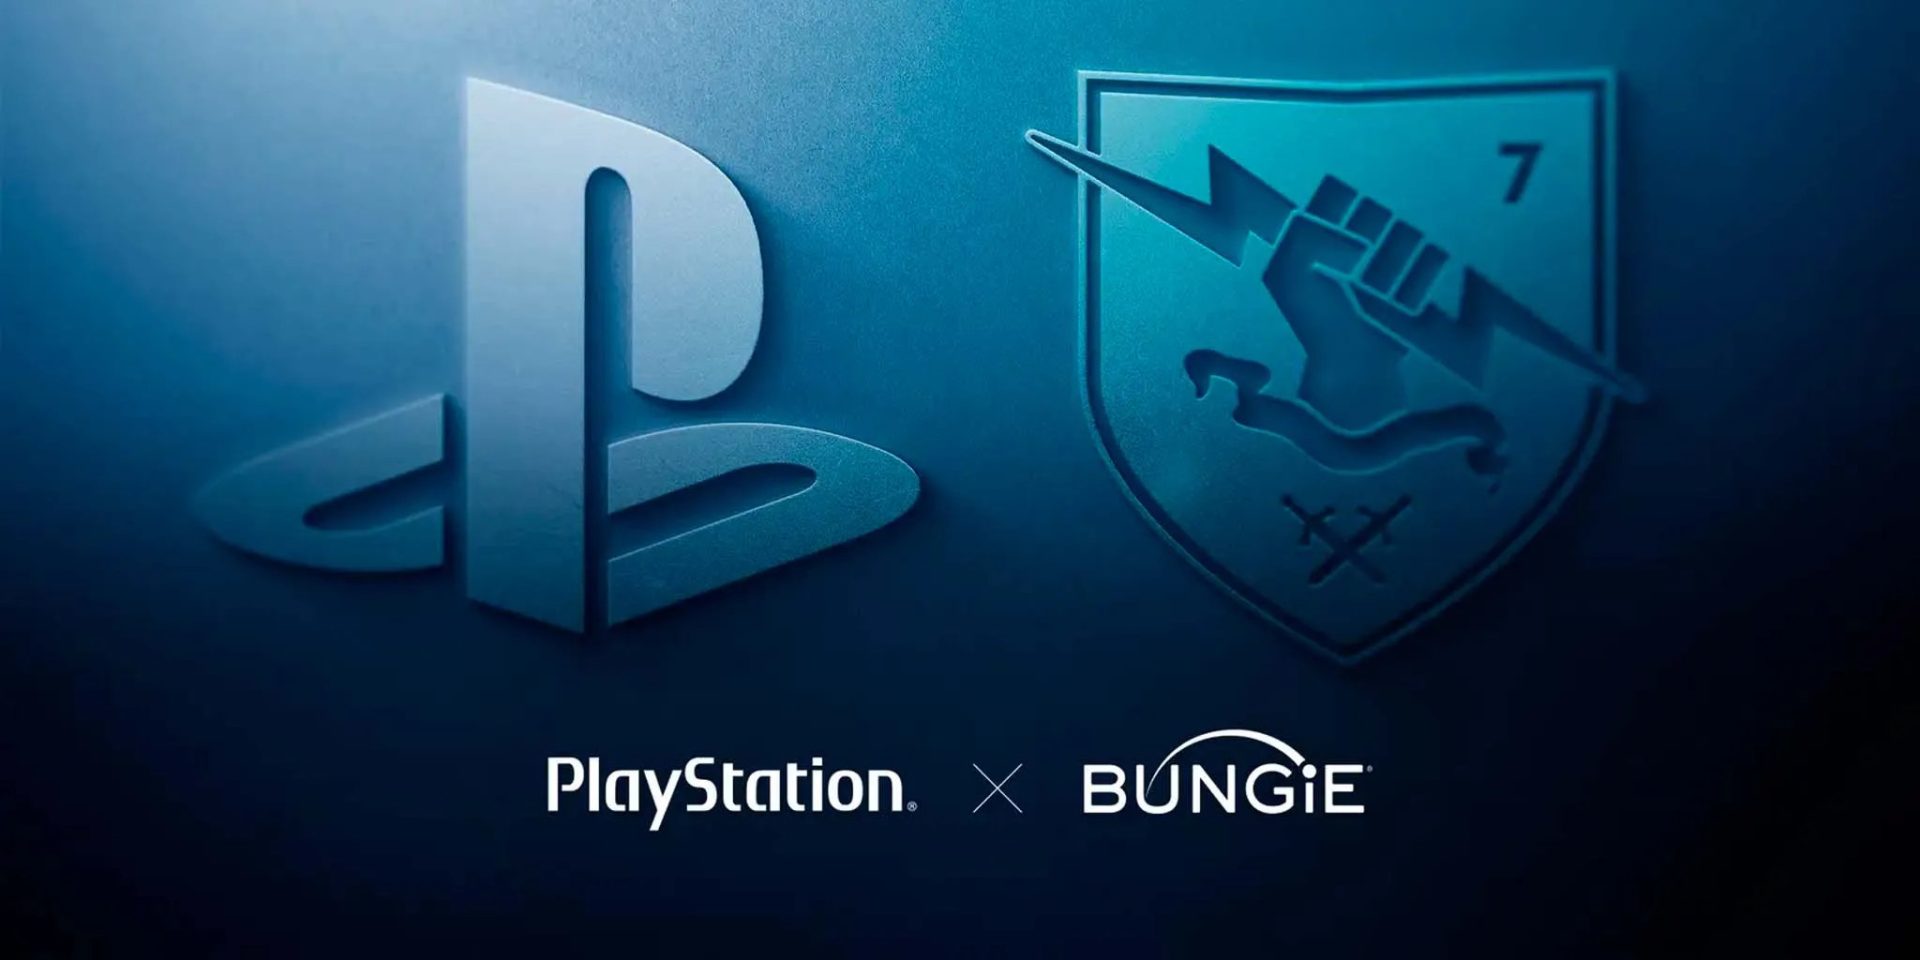 Bungie entra a far parte della famiglia PlayStation: è ufficiale